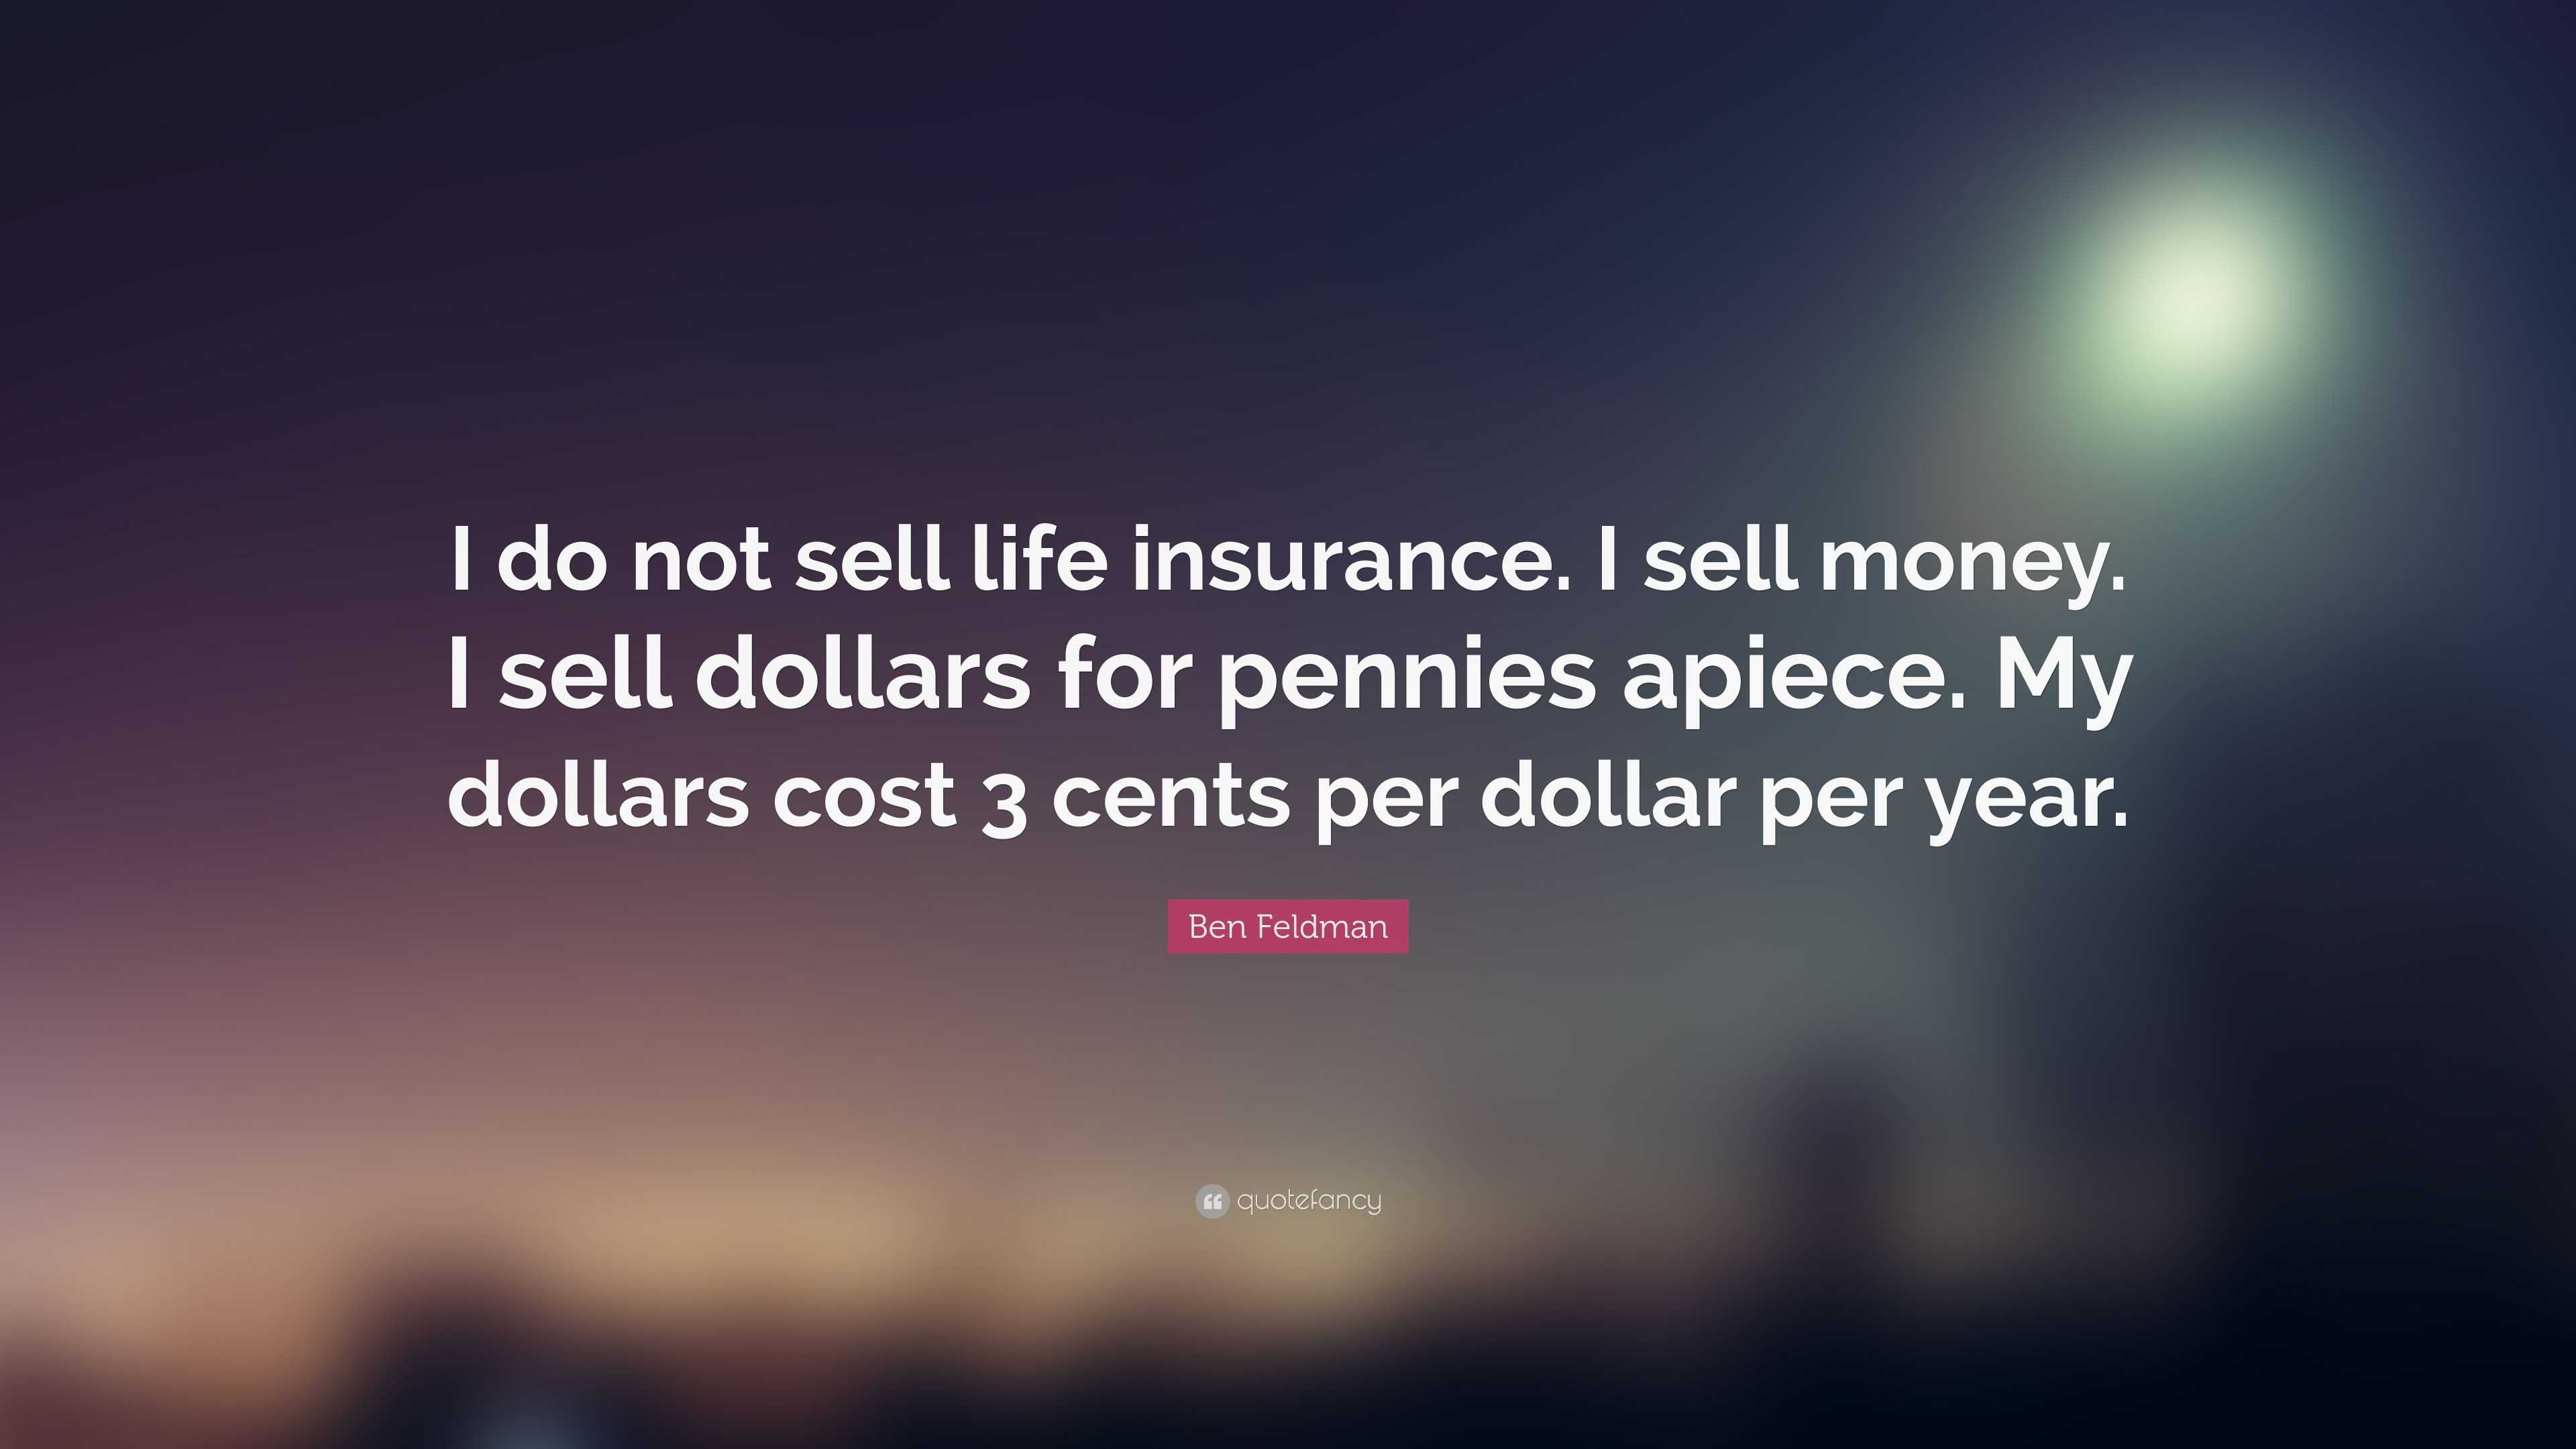 Ben Feldman Quote “I do not sell life insurance I sell money